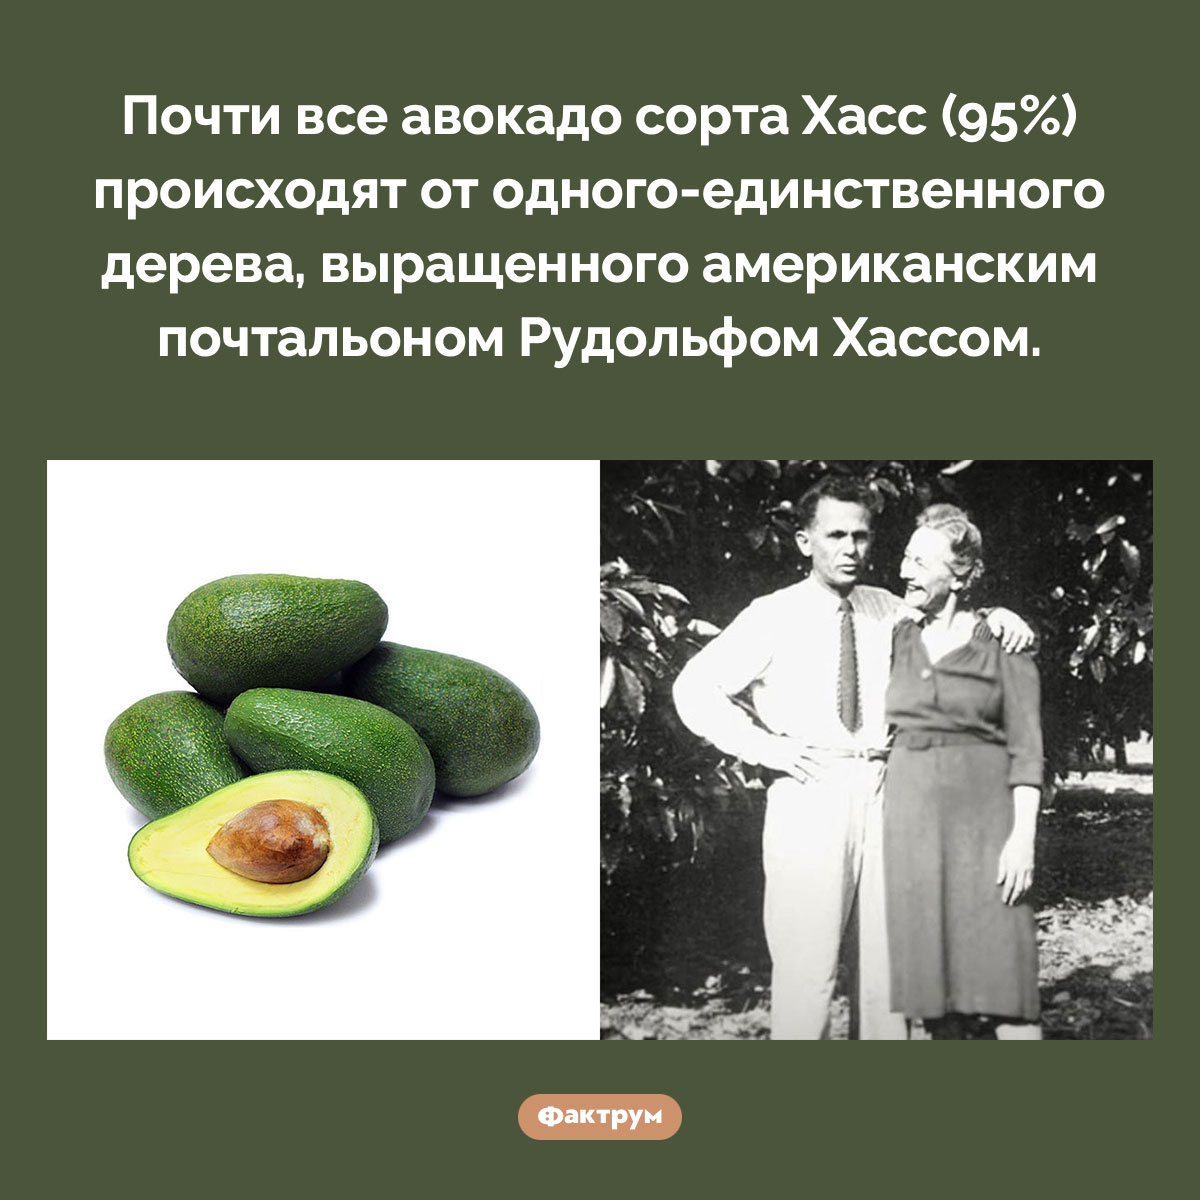 Предок всех авокадо Хасс. Почти все авокадо сорта Хасс (95%) происходят от одного-единственного дерева, выращенного американским почтальоном Рудольфом Хассом.